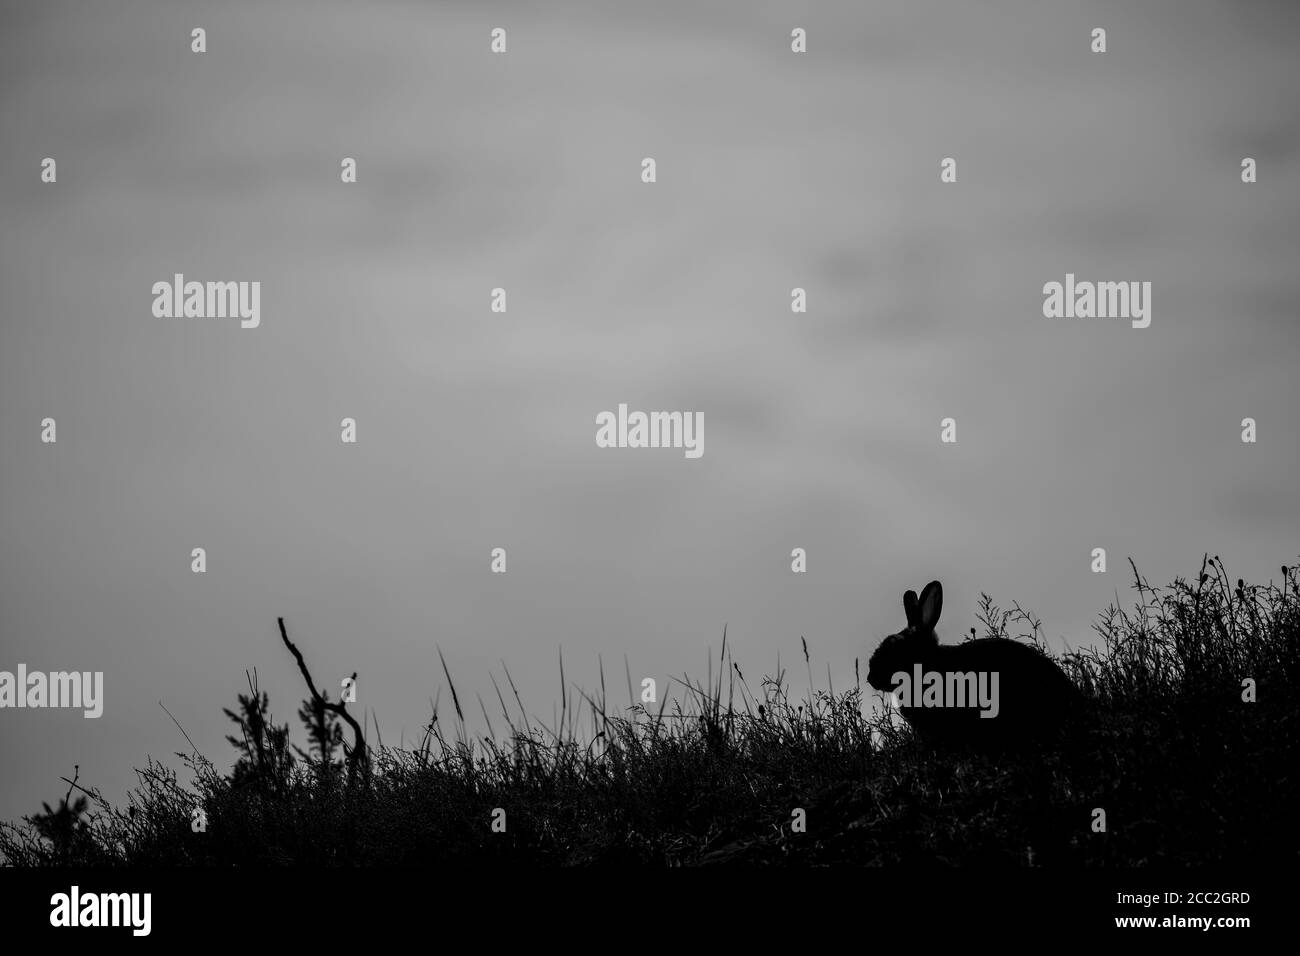 Vue latérale en noir et blanc du lapin sauvage en silhouette sur le flanc du Royaume-Uni au crépuscule. Ciel vide gris, espace de copie utile pour la couverture/l'affiche du livre. Banque D'Images